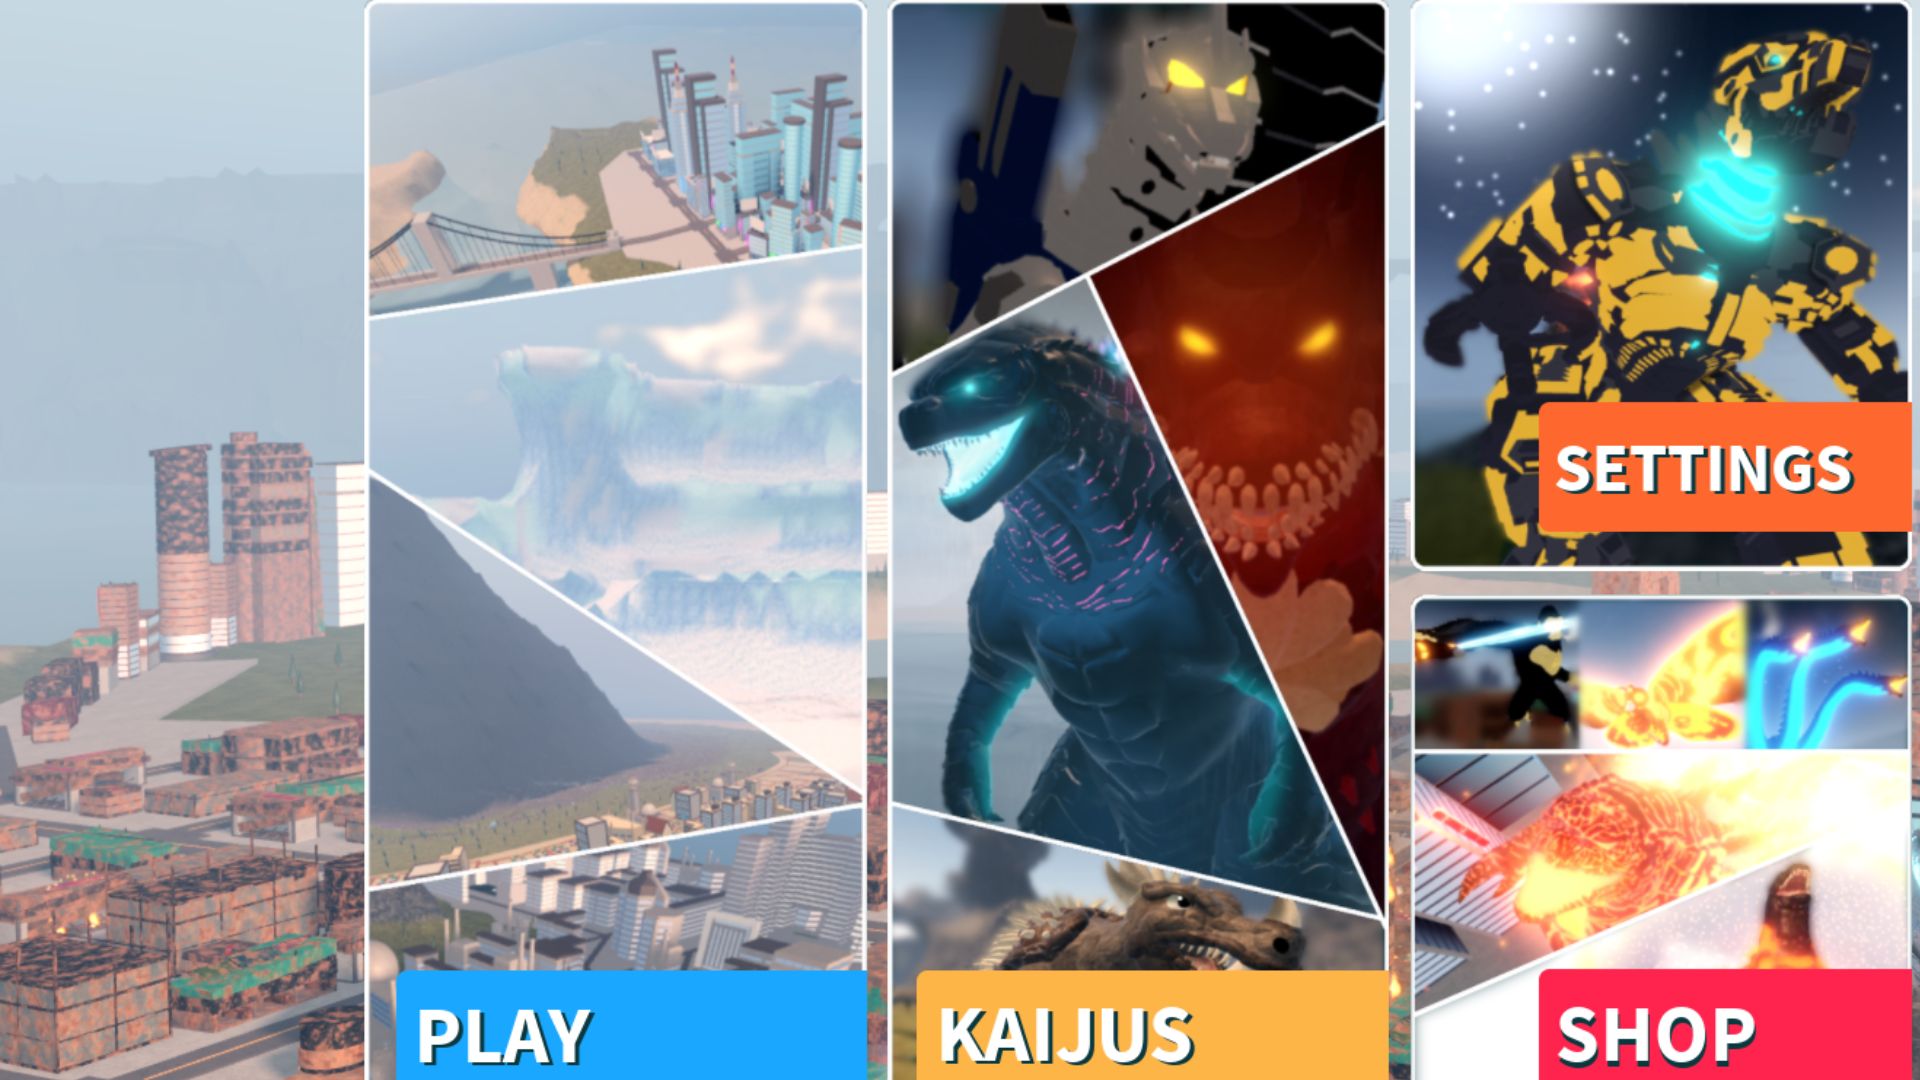 O menu do jogo Roblox Kaiju Universe.  Há quatro fotos, uma de uma paisagem com a palavra 'play' na parte inferior, um mashup estilo quadrinhos de Kaiju com aparência de Godzilla com a palavra 'kaijus' na parte inferior e um menu de configurações, tudo na frente de um grande paisagem virtual.